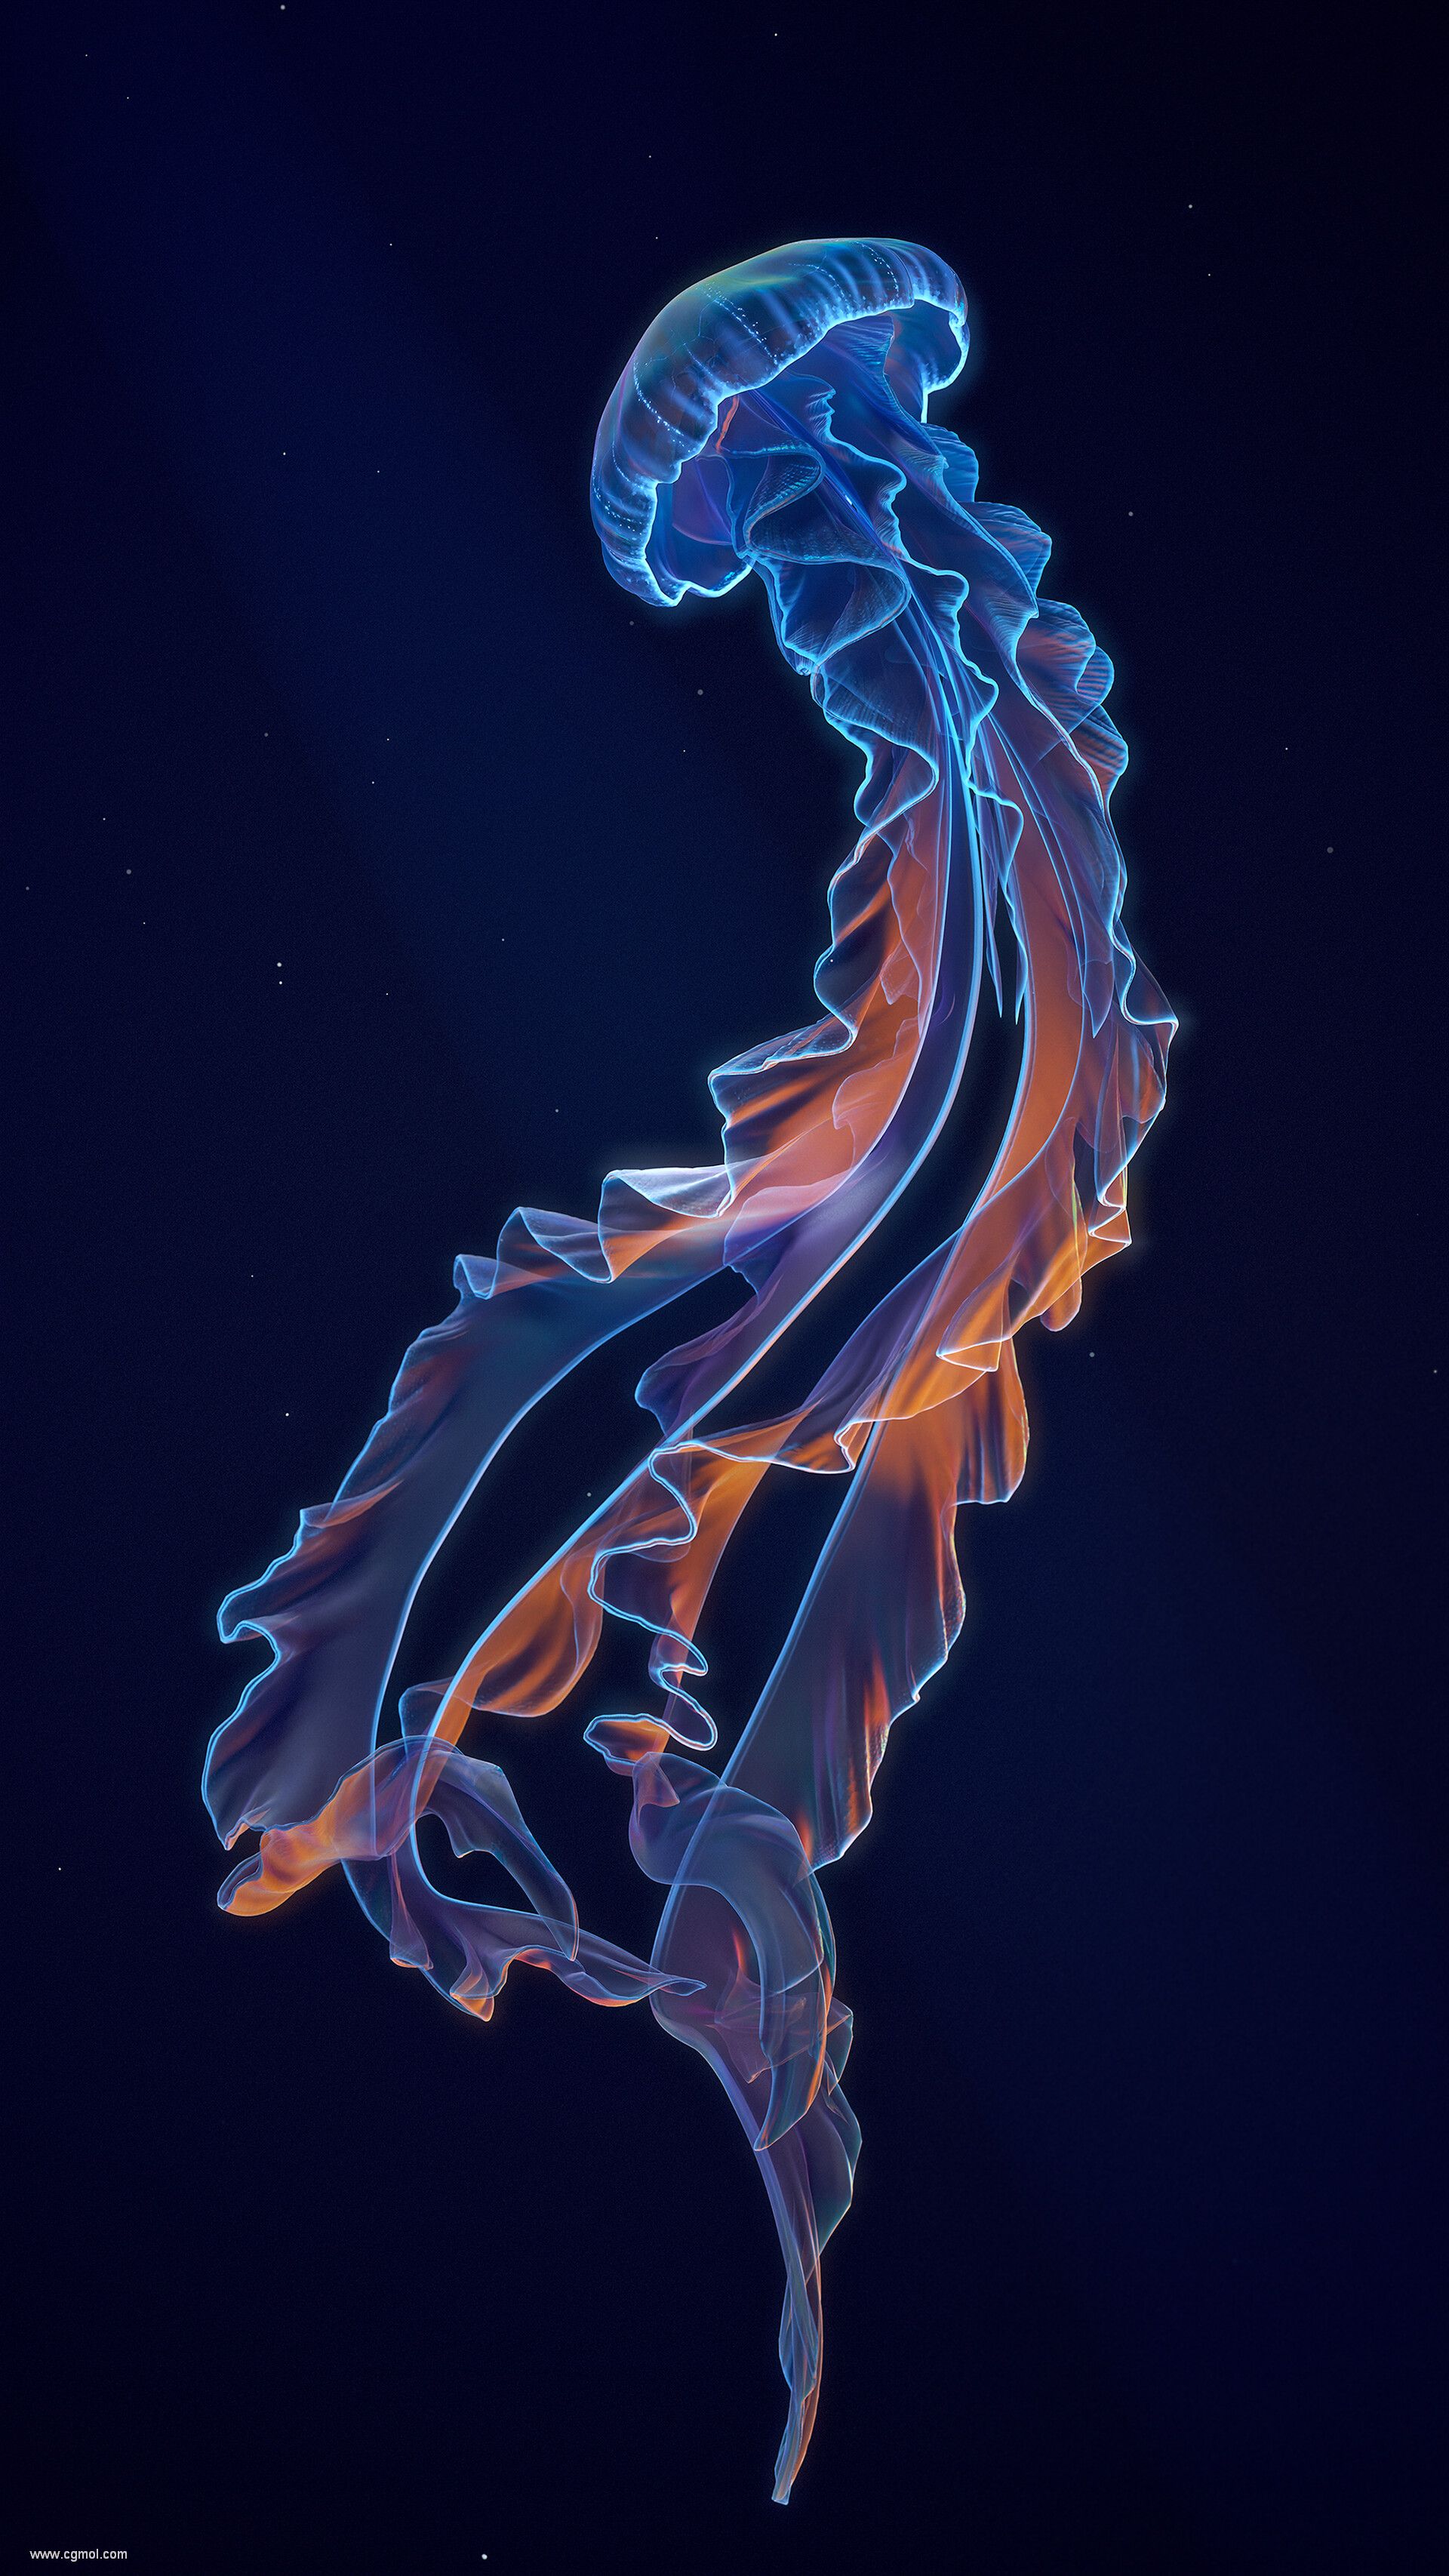 shun-jellyfish06